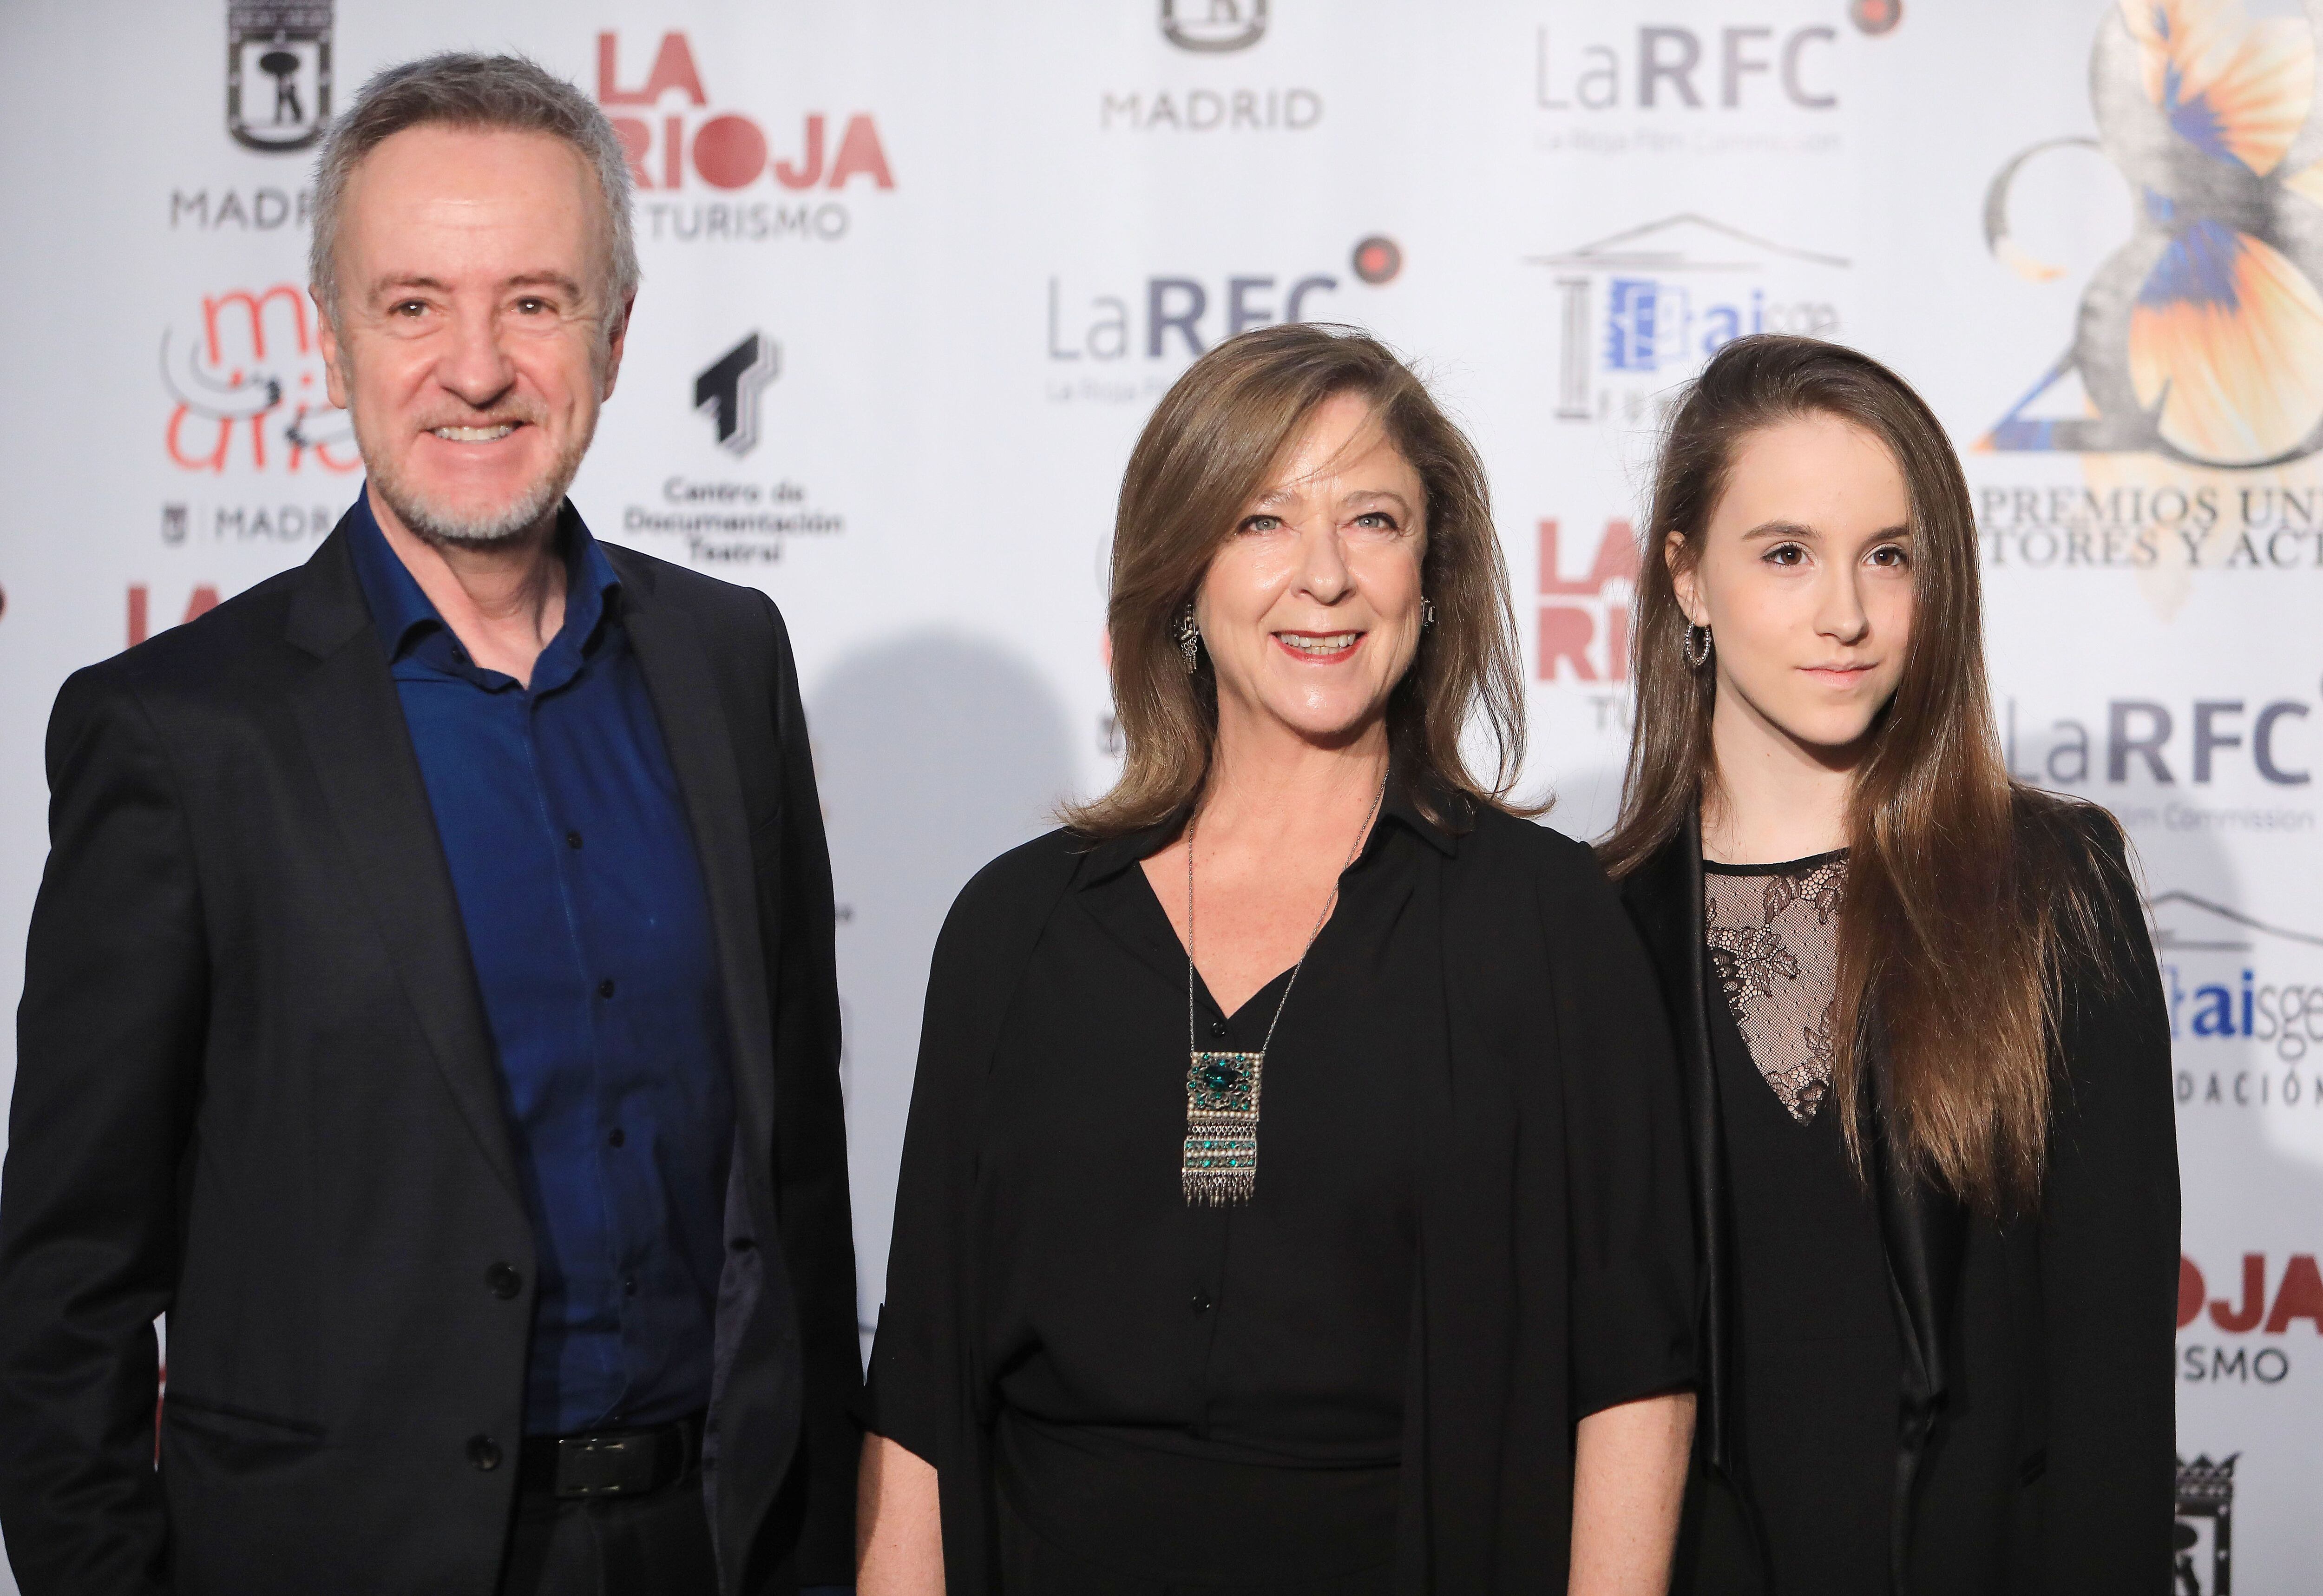 El actor Carlos Hipolito con su esposa e hija, las actrices Mapi Sagaseta y Elisa Hipólito, en los premios de la Unión de Actores en marzo de 2019 en Madrid.